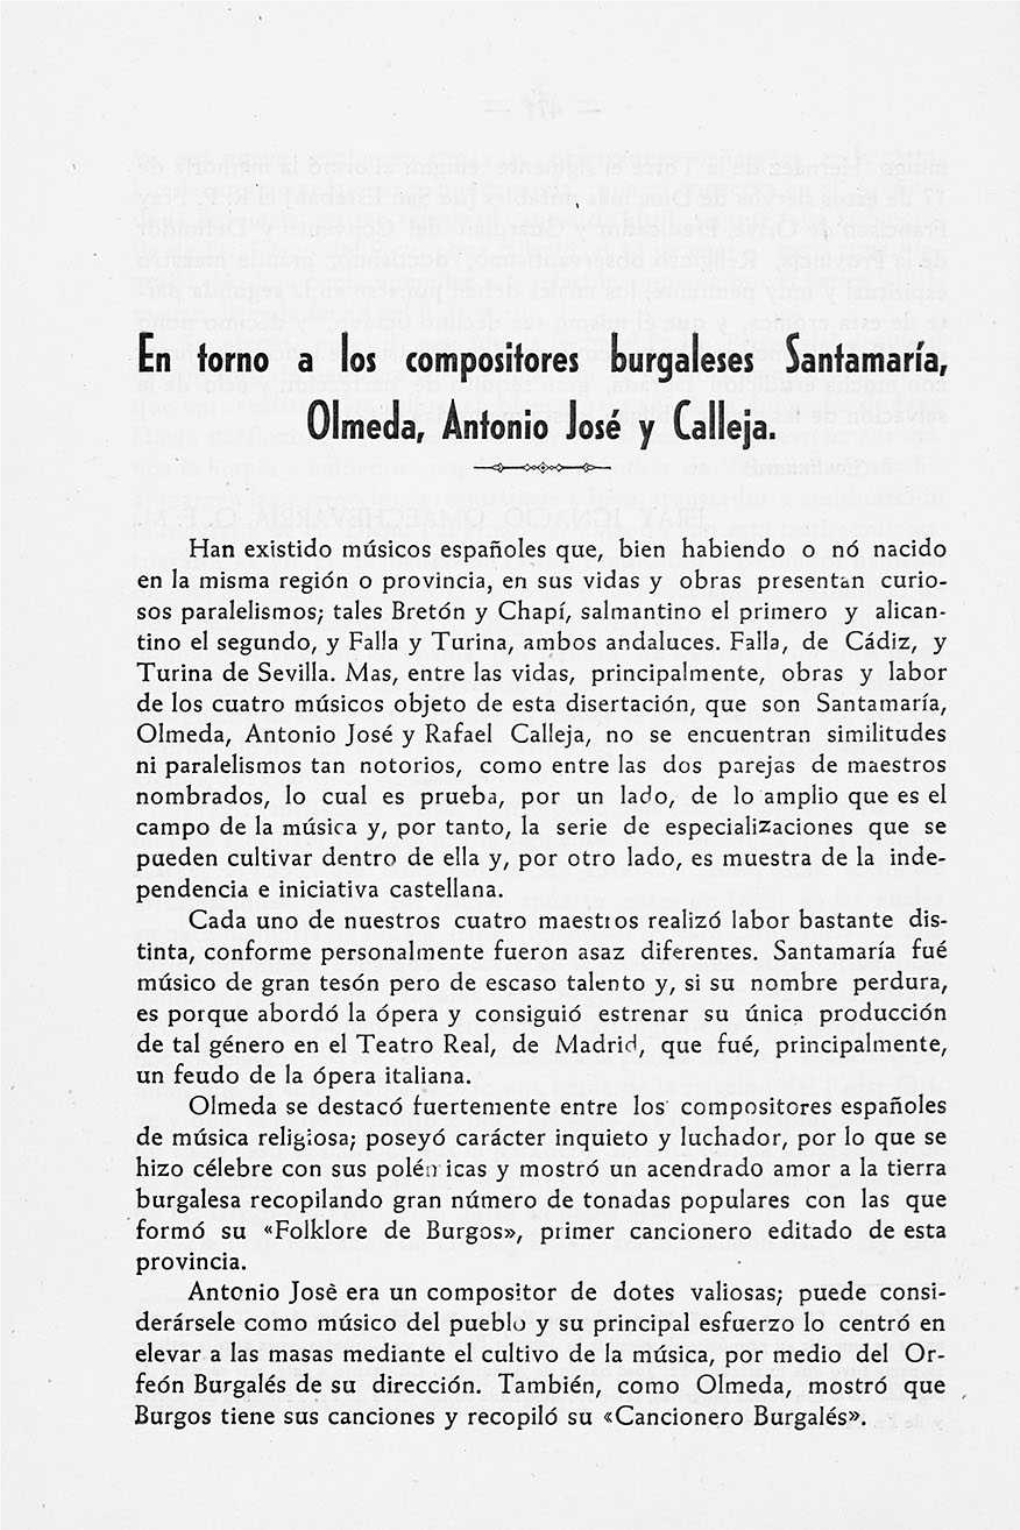 En Torno a Los Compositores Hurgaleses Santamaría, Oirnecla, Antonio José Y Calleja